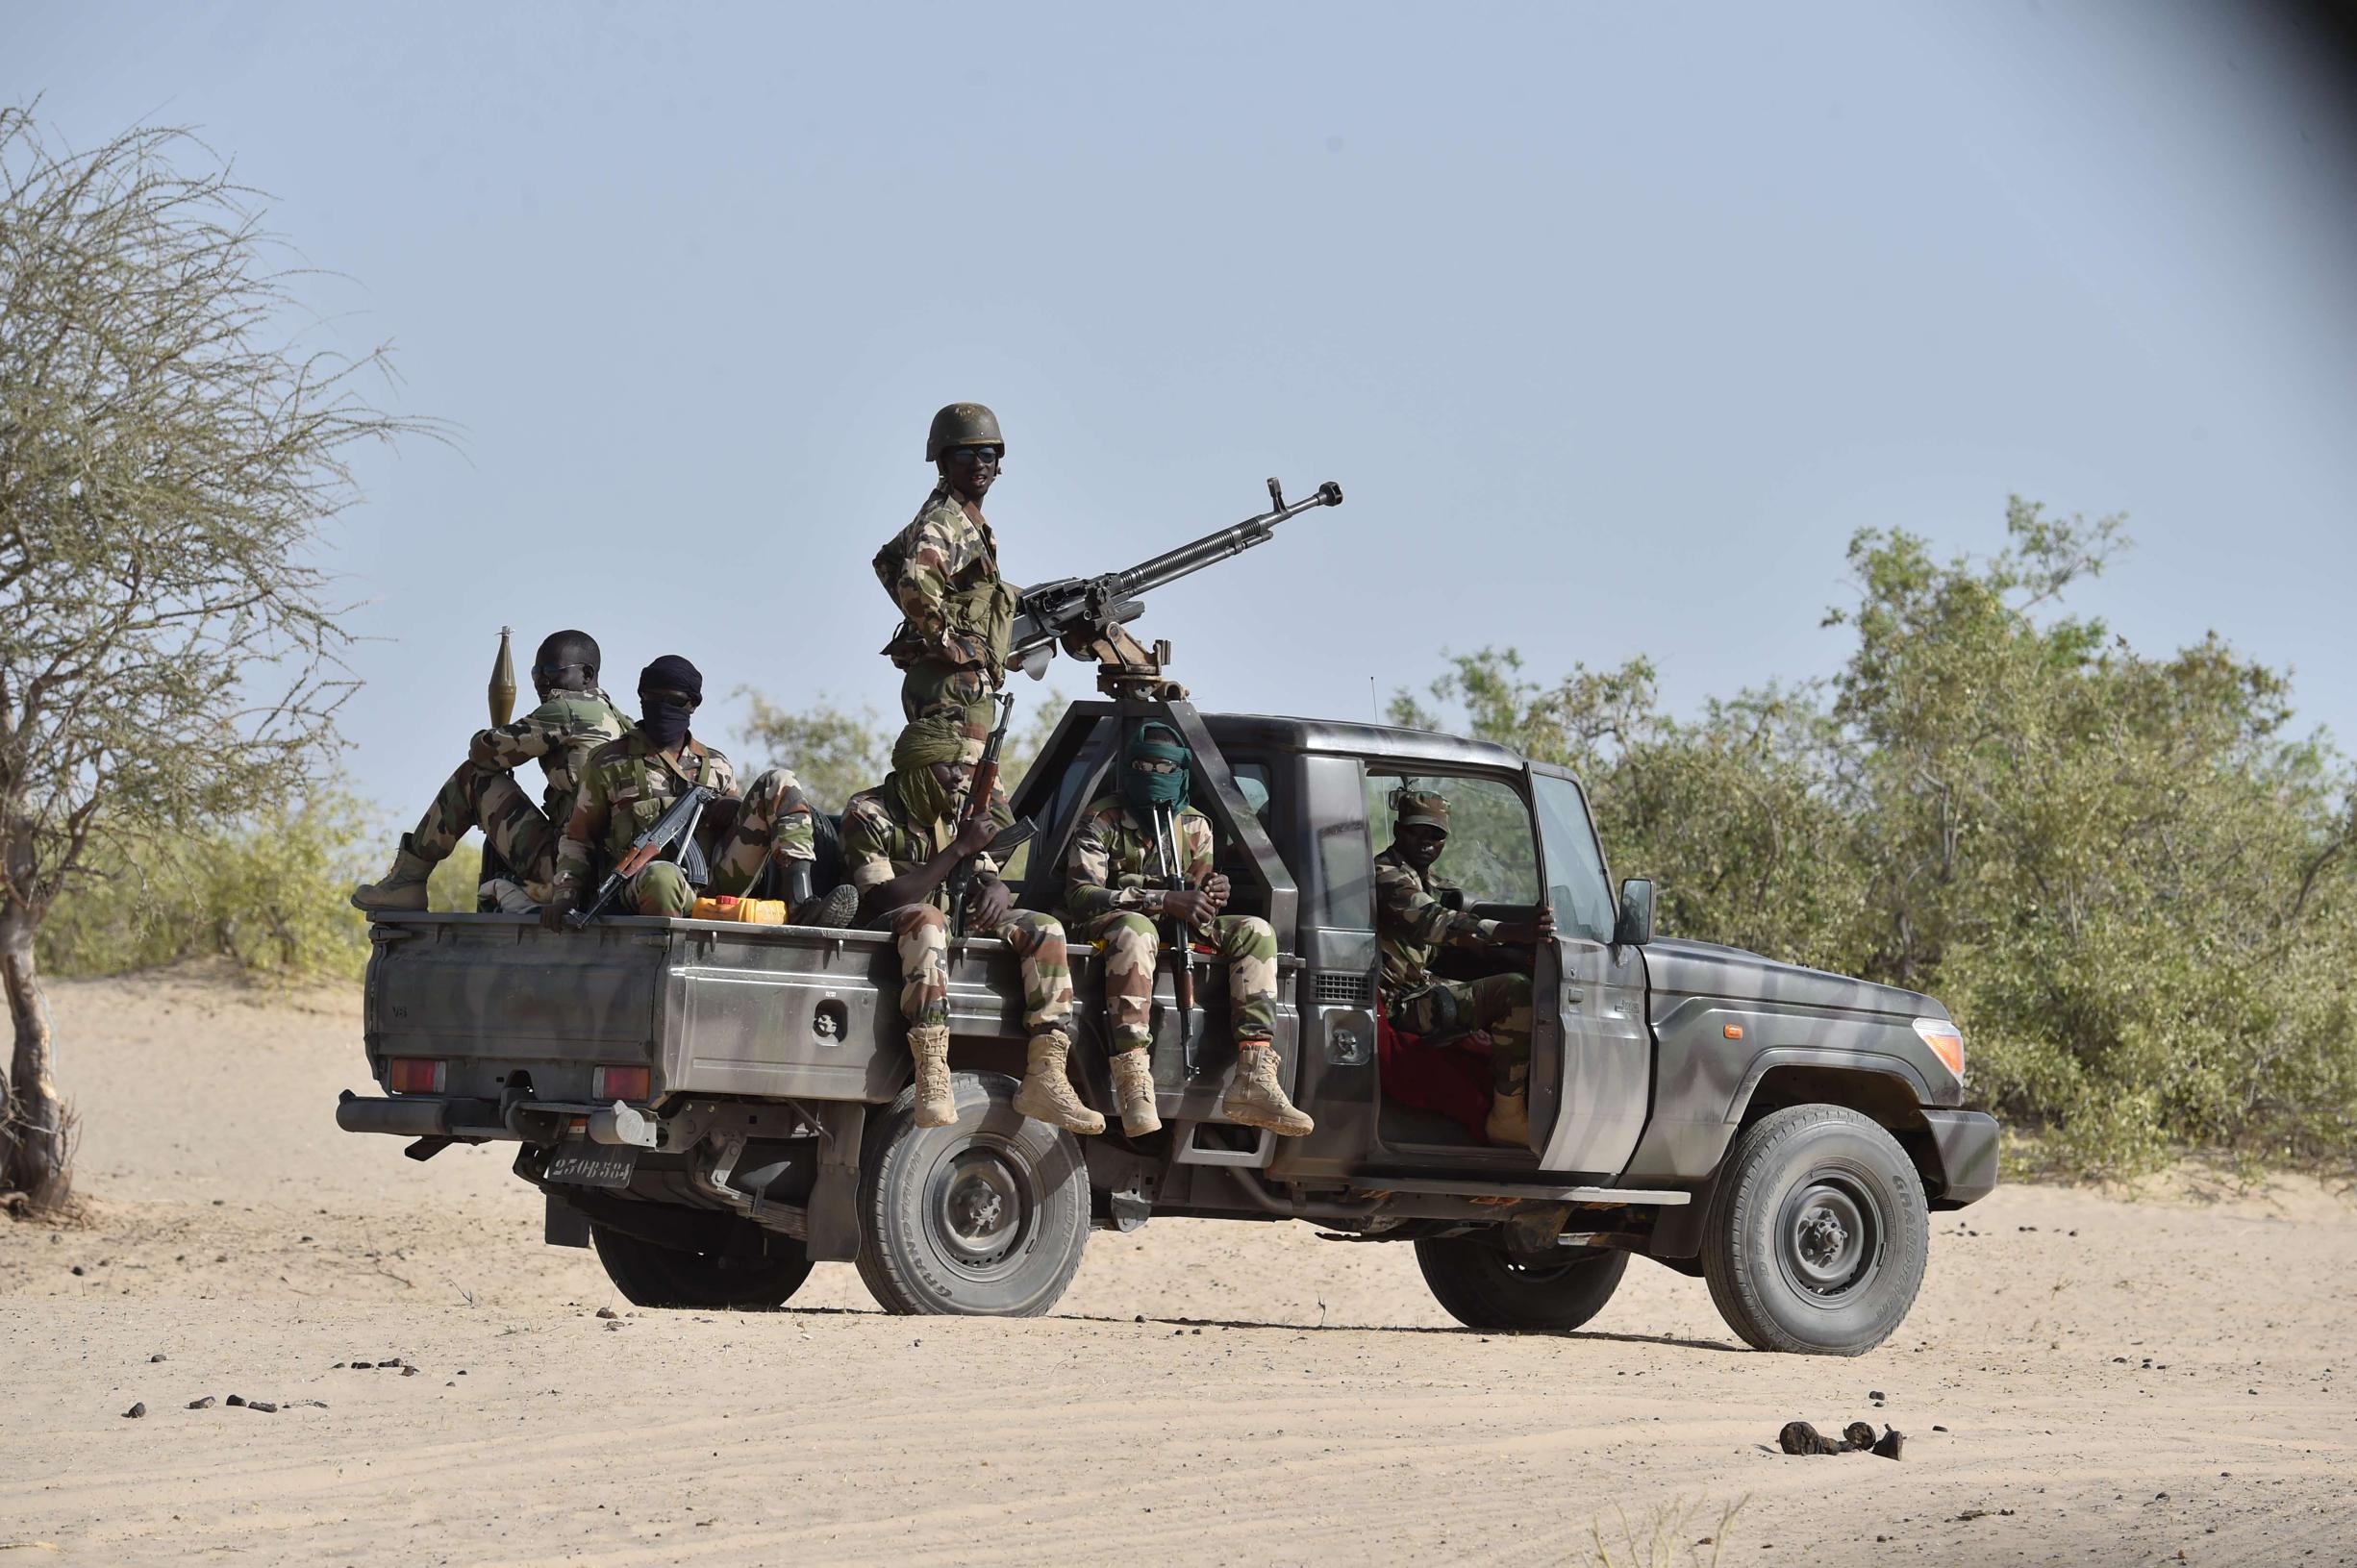 300 civili uccisi nell’operazione in Mali